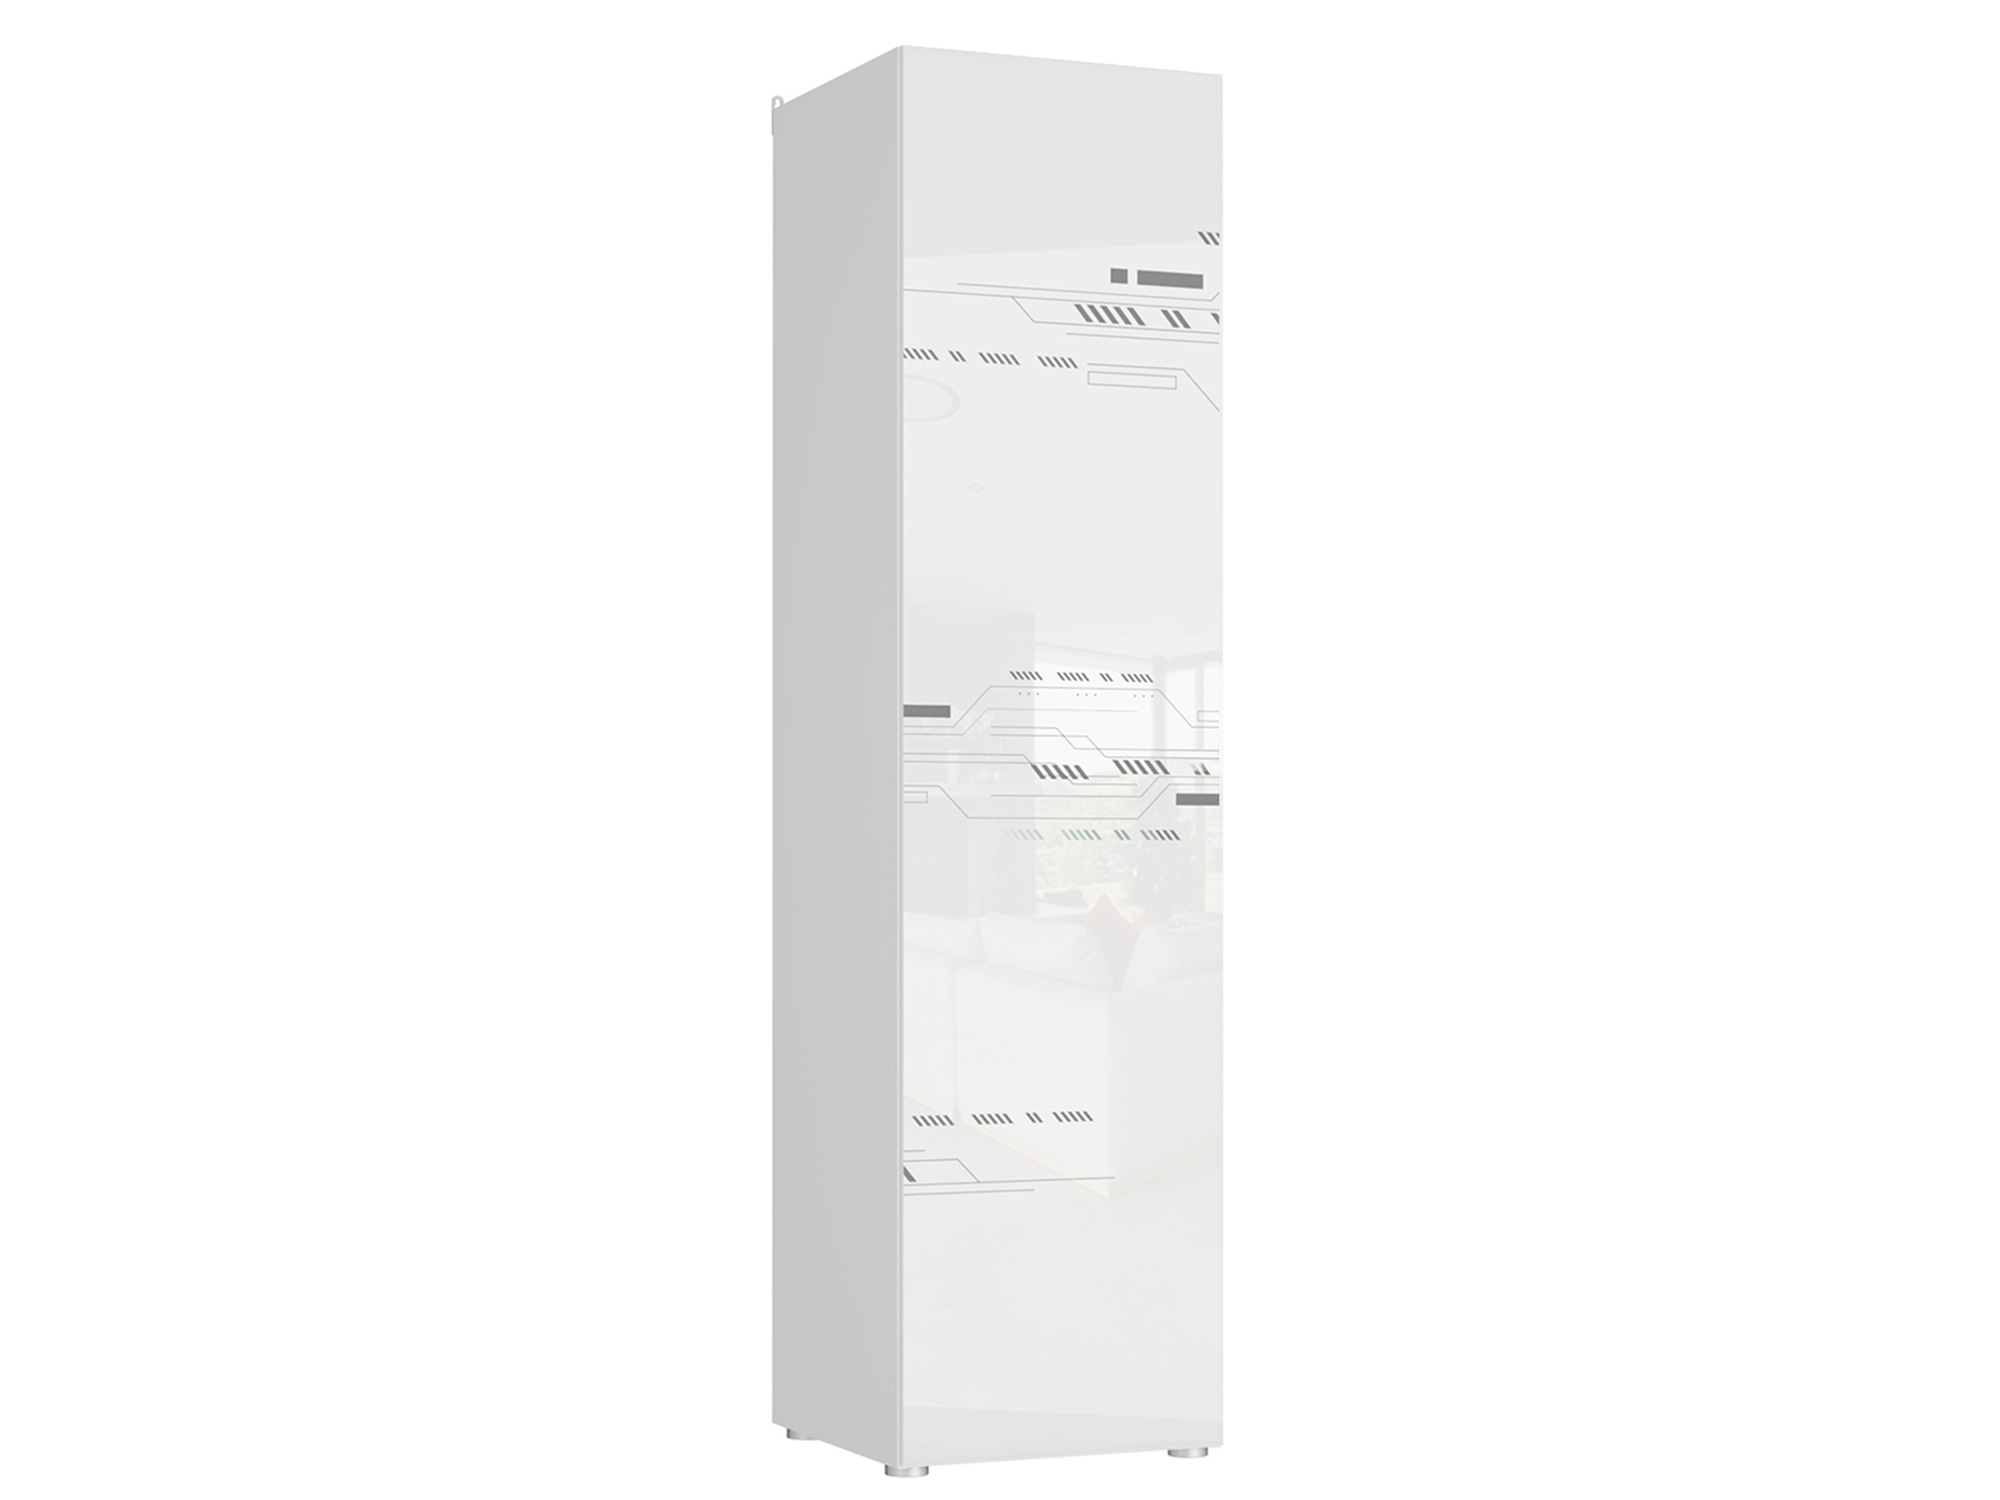 Шкаф 1-дверный Модерн (Modern) Техно Белый глянец, , Белый, МДФ, ЛДСП шкаф 1 дверный модерн техно белый глянец белый мдф лдсп